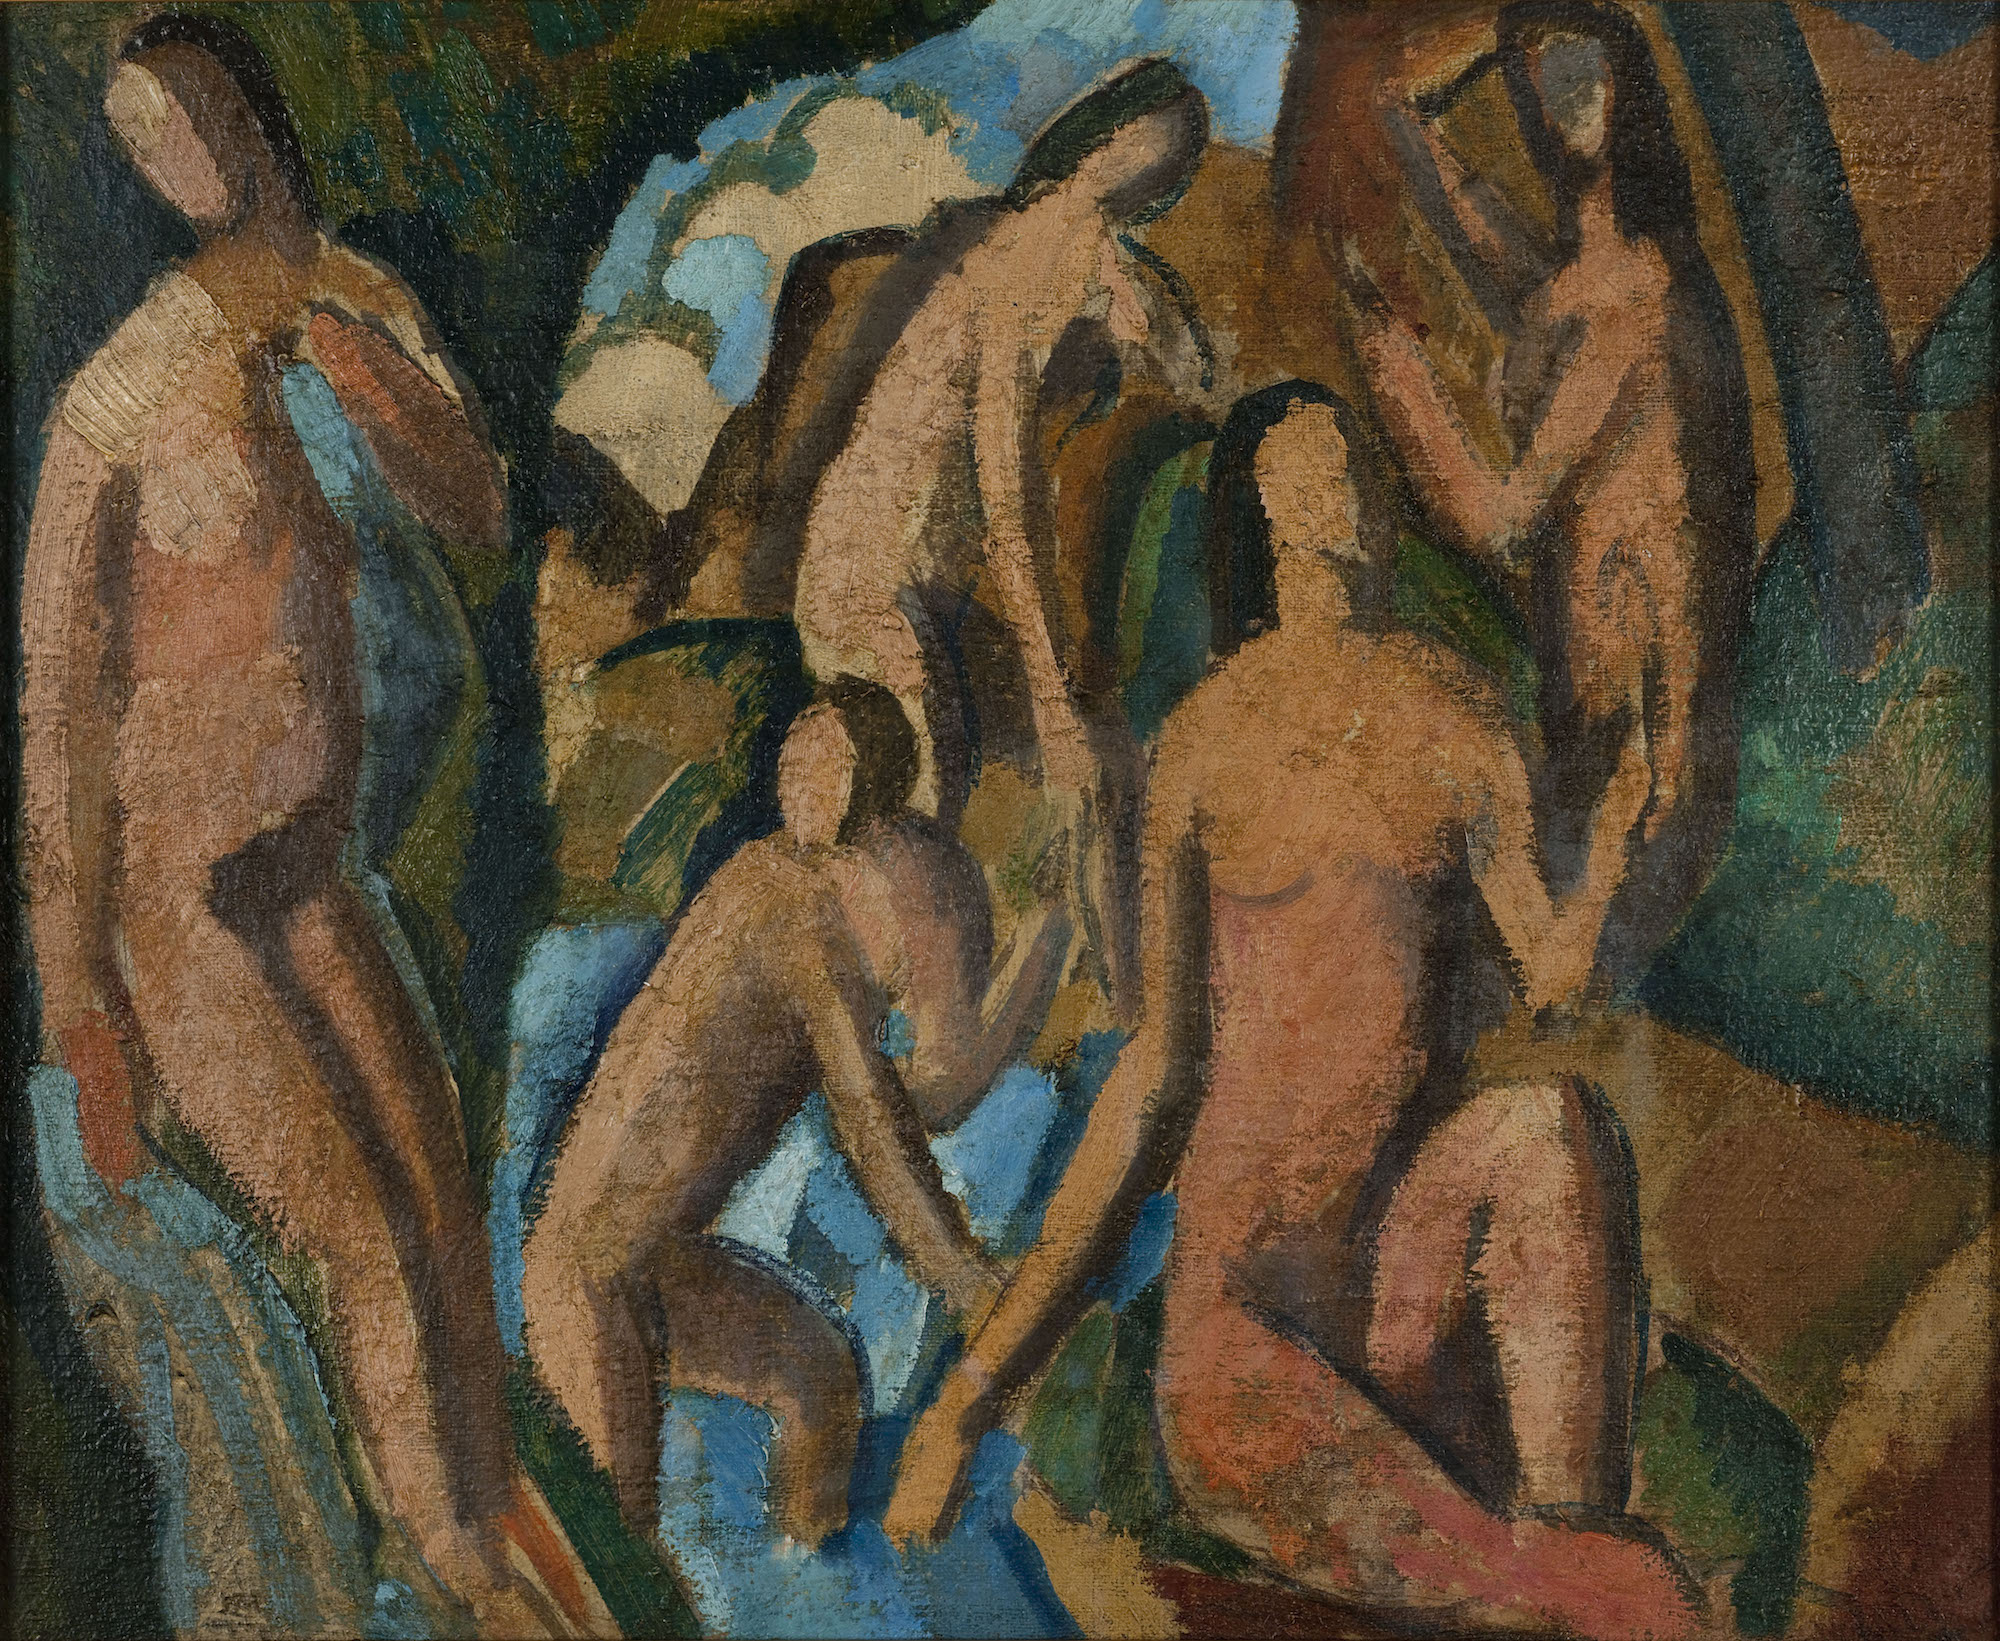 André Derain (1880-1954), Baigneuses, vers 1908. Huile sur toile, 38 x 46 cm. Paris Musées / musée d’Art moderne de Paris. Photo service de presse. © Adagp, Paris, 2023